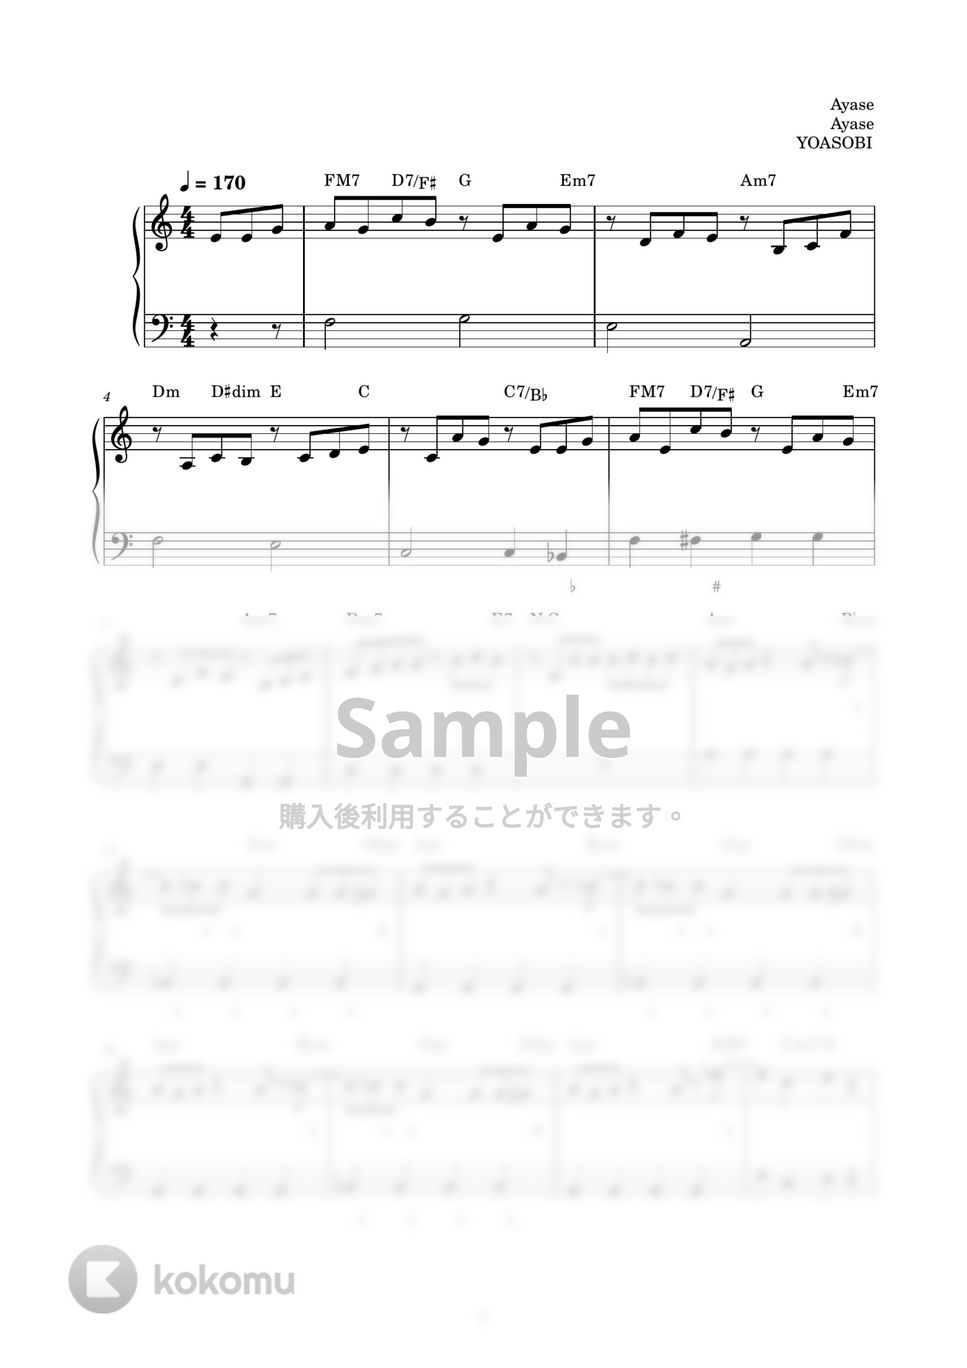 YOASOBI - 祝福 (ピアノ楽譜 / かんたん両手 / 歌詞付き / ドレミ付き / 初心者向き) by piano.tokyo